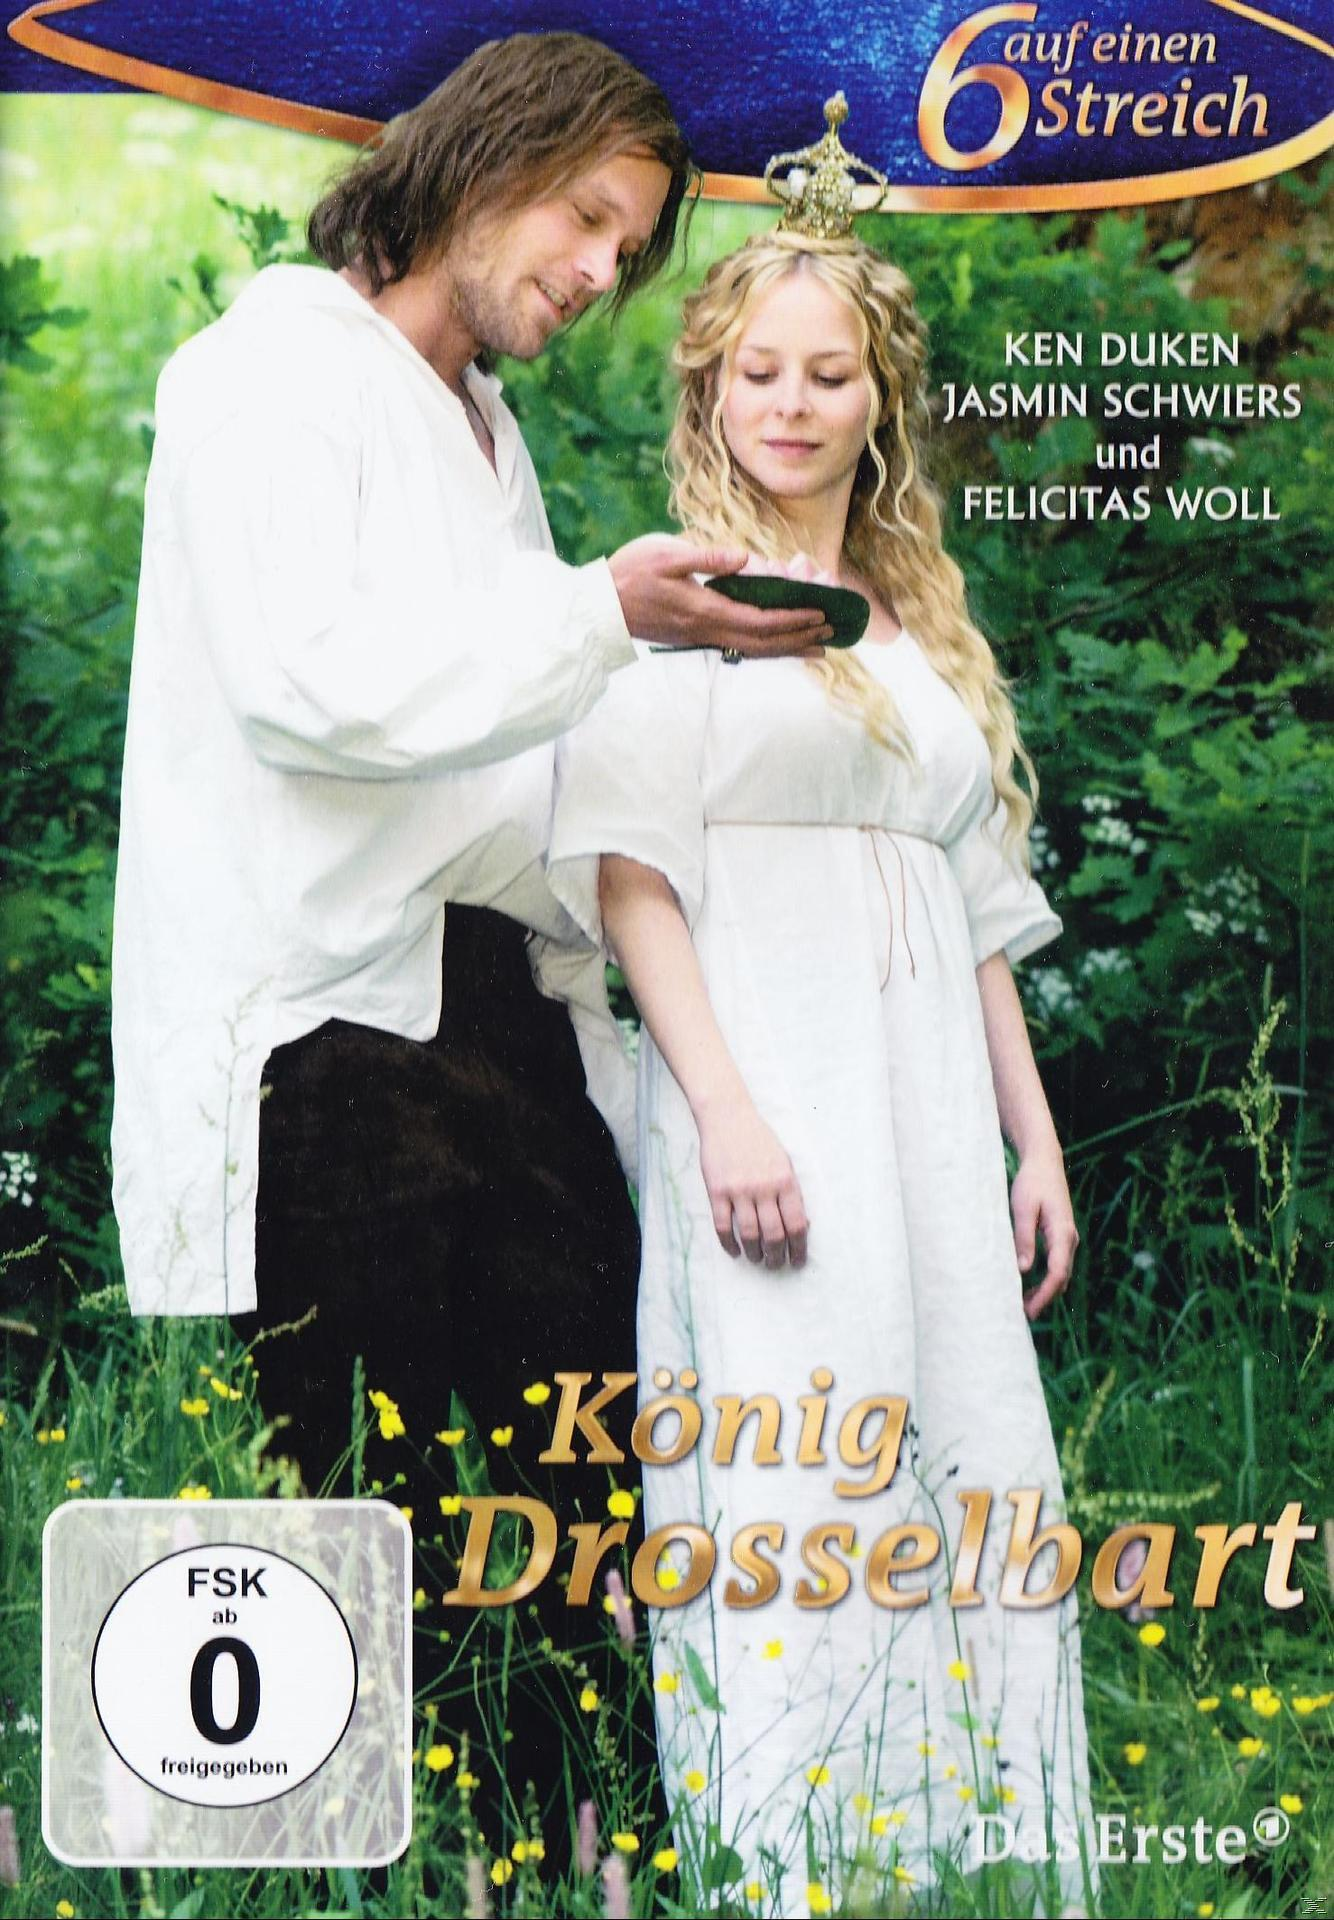 KÖNIG DROSSELBART AUF 1 EINEN - DVD SECHS STREICH